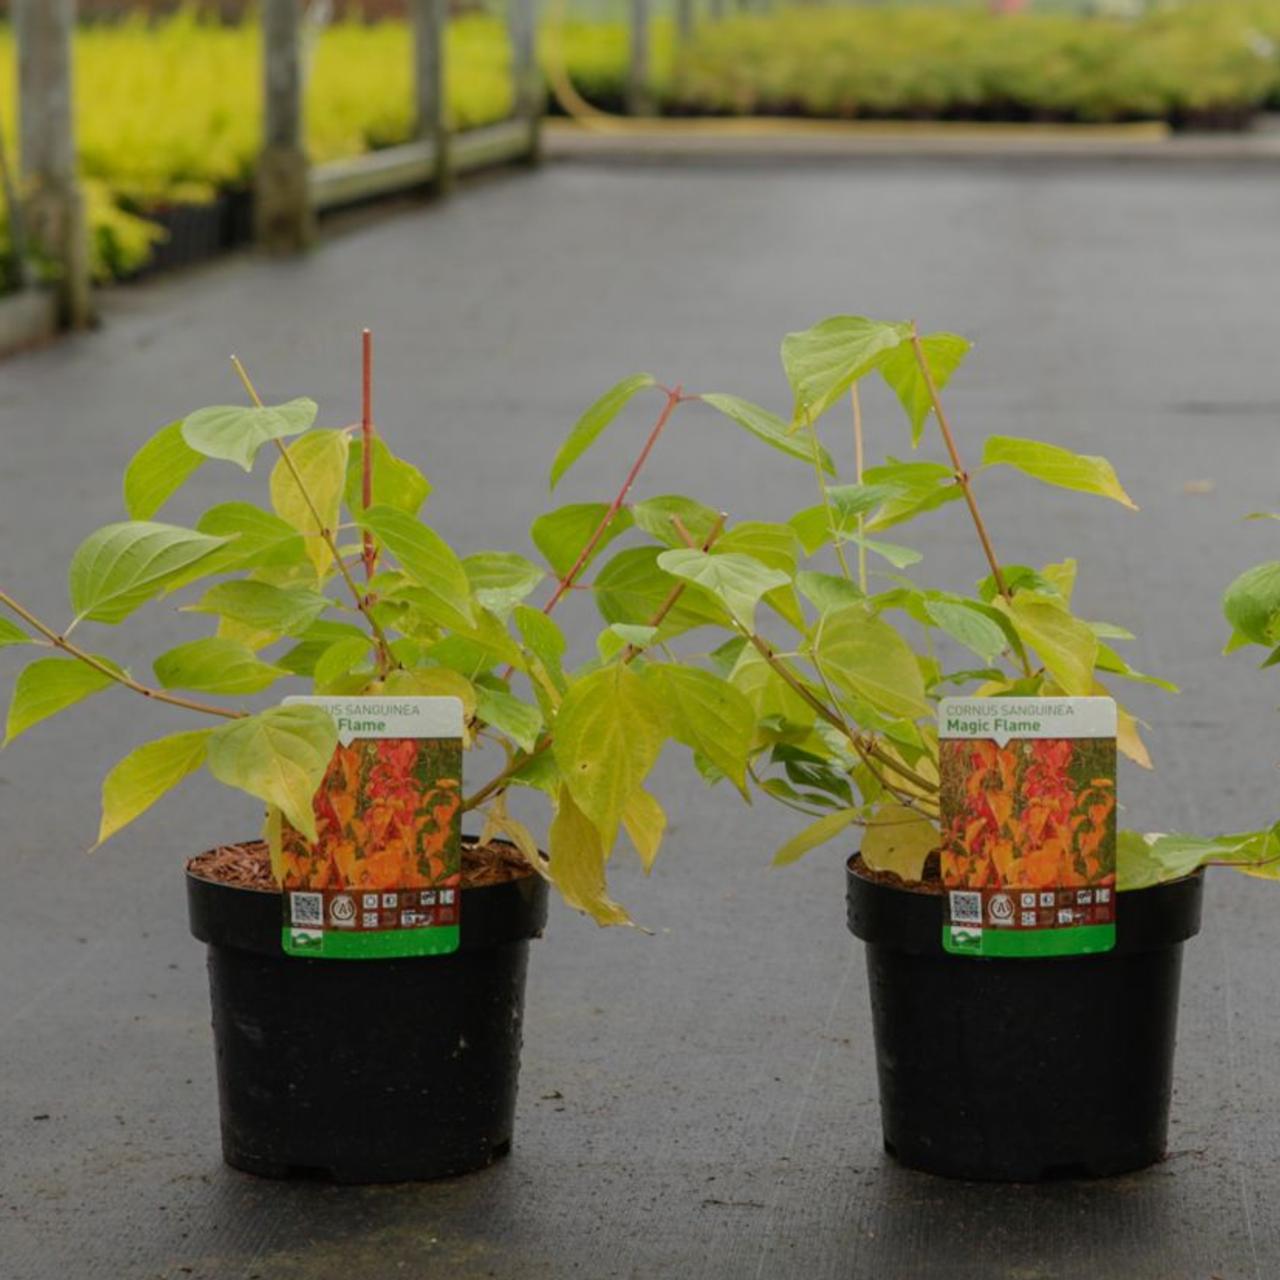 Cornus sanguinea 'Magic Flame' plant